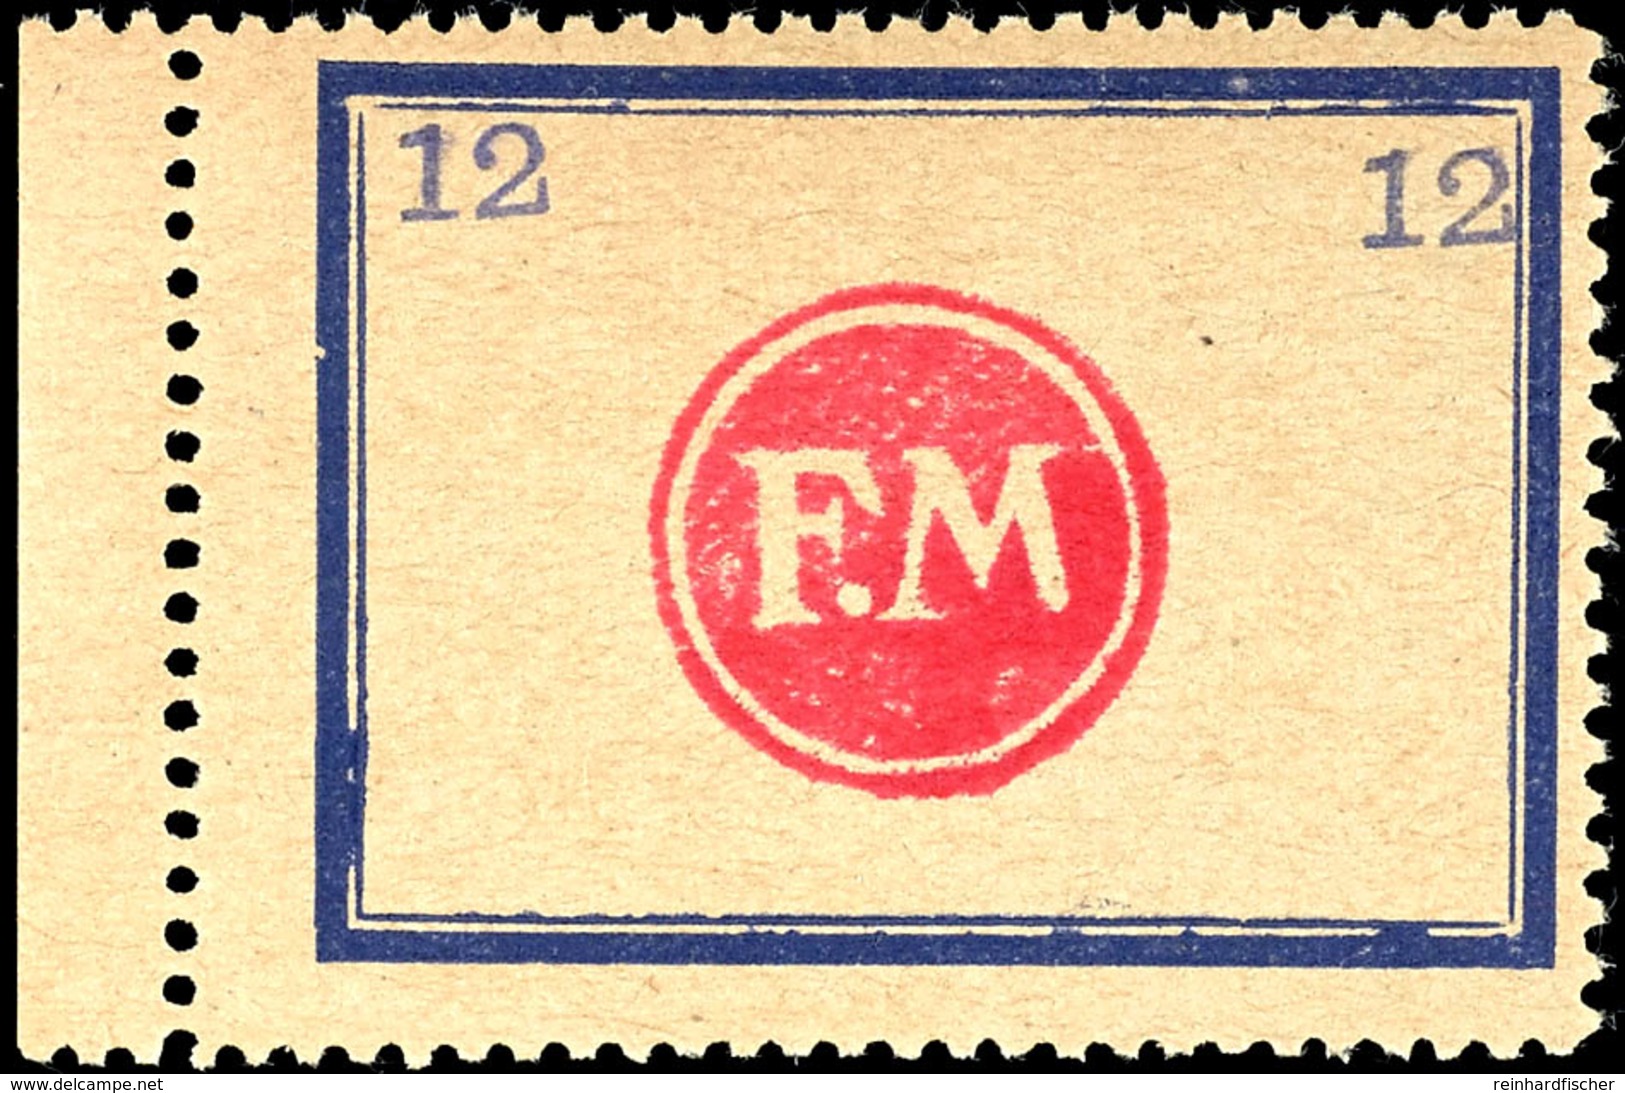 5 Pfg - 12 Pfg Behelfsmarken Mit Blauen Doppelrahmen (Rahmengröße 43x31,5 Mm), Kleine Wertziffern Oben, Kompletter Postf - Fredersdorf-Vogelsdorf